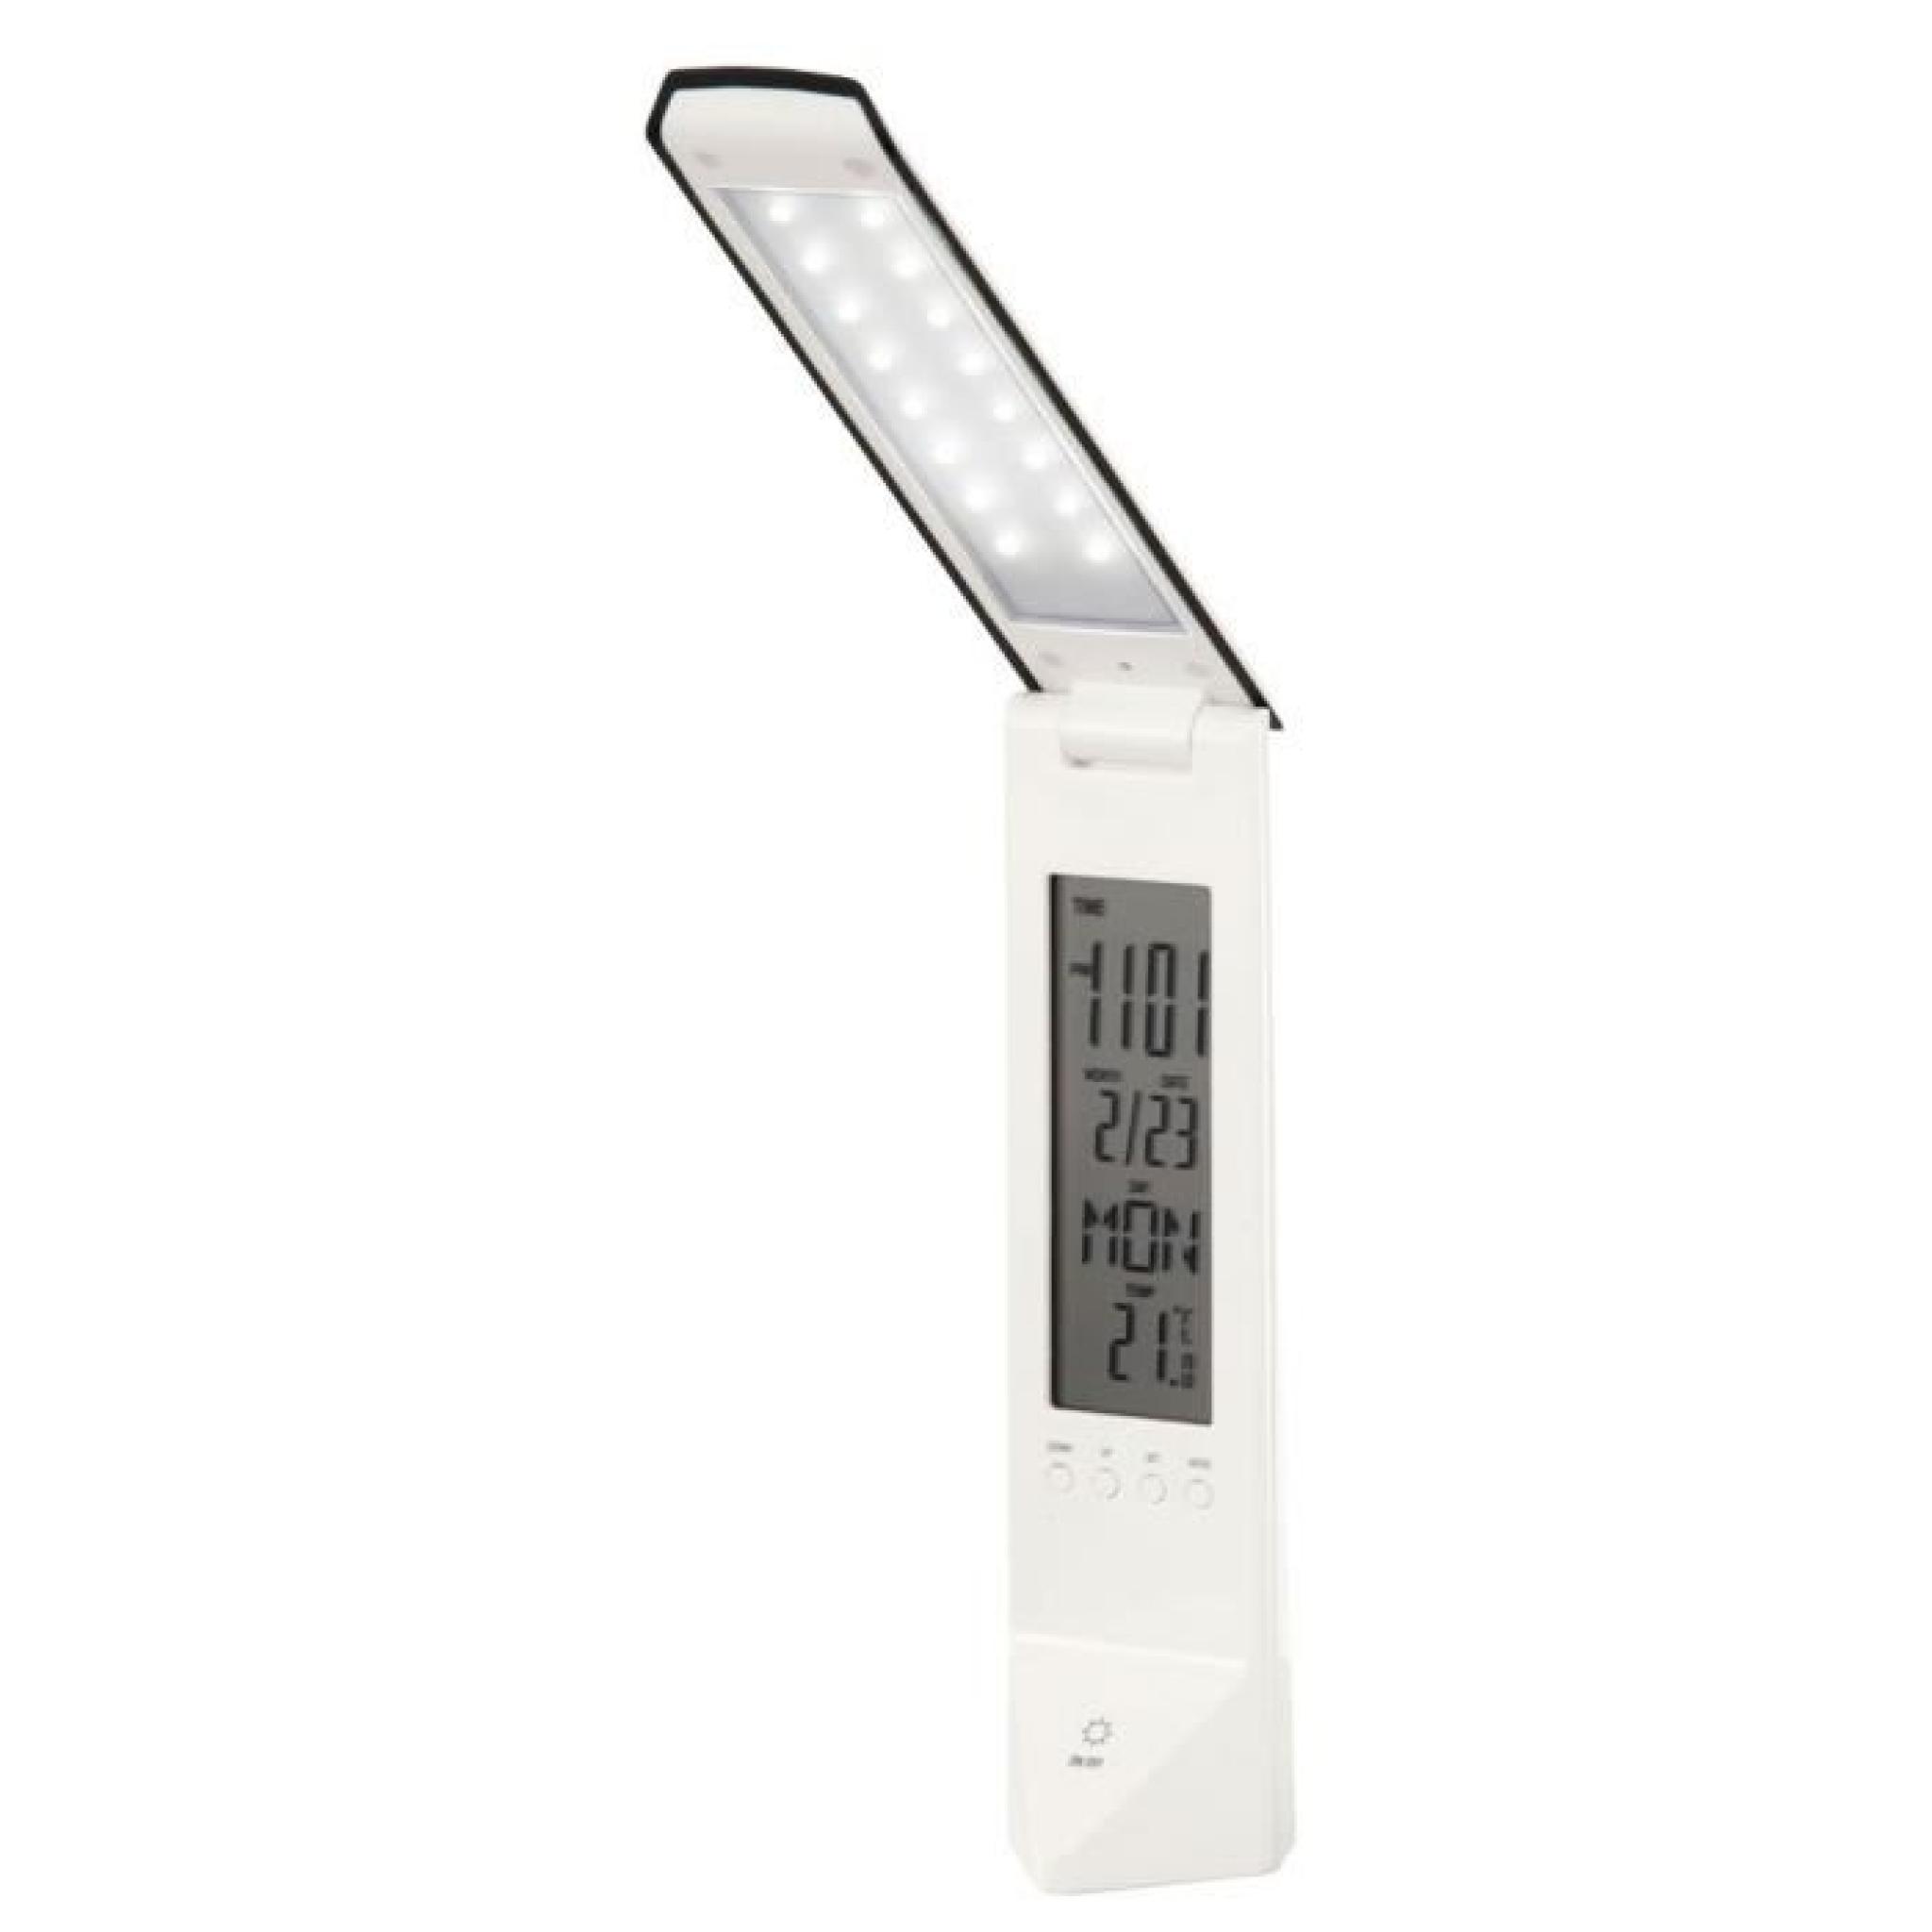 Lampe de table DEL affichage température heure jour semaine dimmable Esto9722025